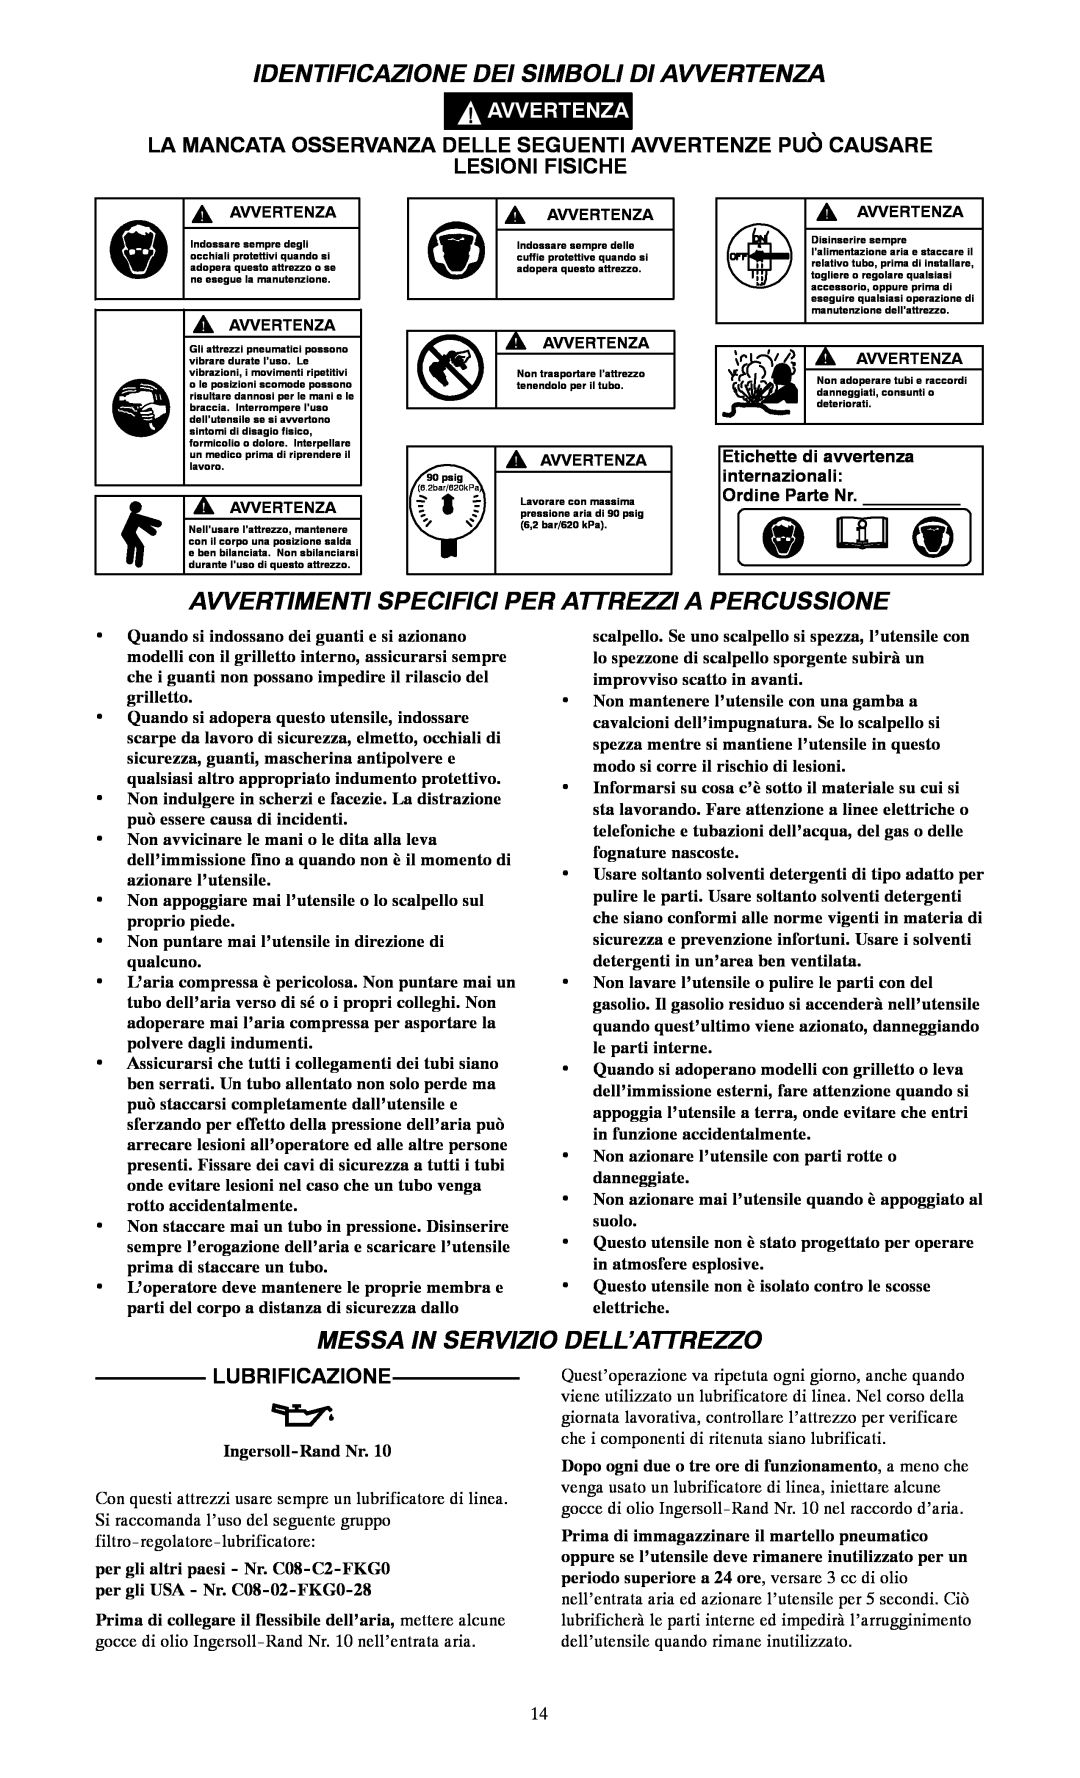 Ingersoll-Rand 115--EU, 116 Identificazione Dei Simboli Di Avvertenza, Avvertimenti Specifici Per Attrezzi A Percussione 